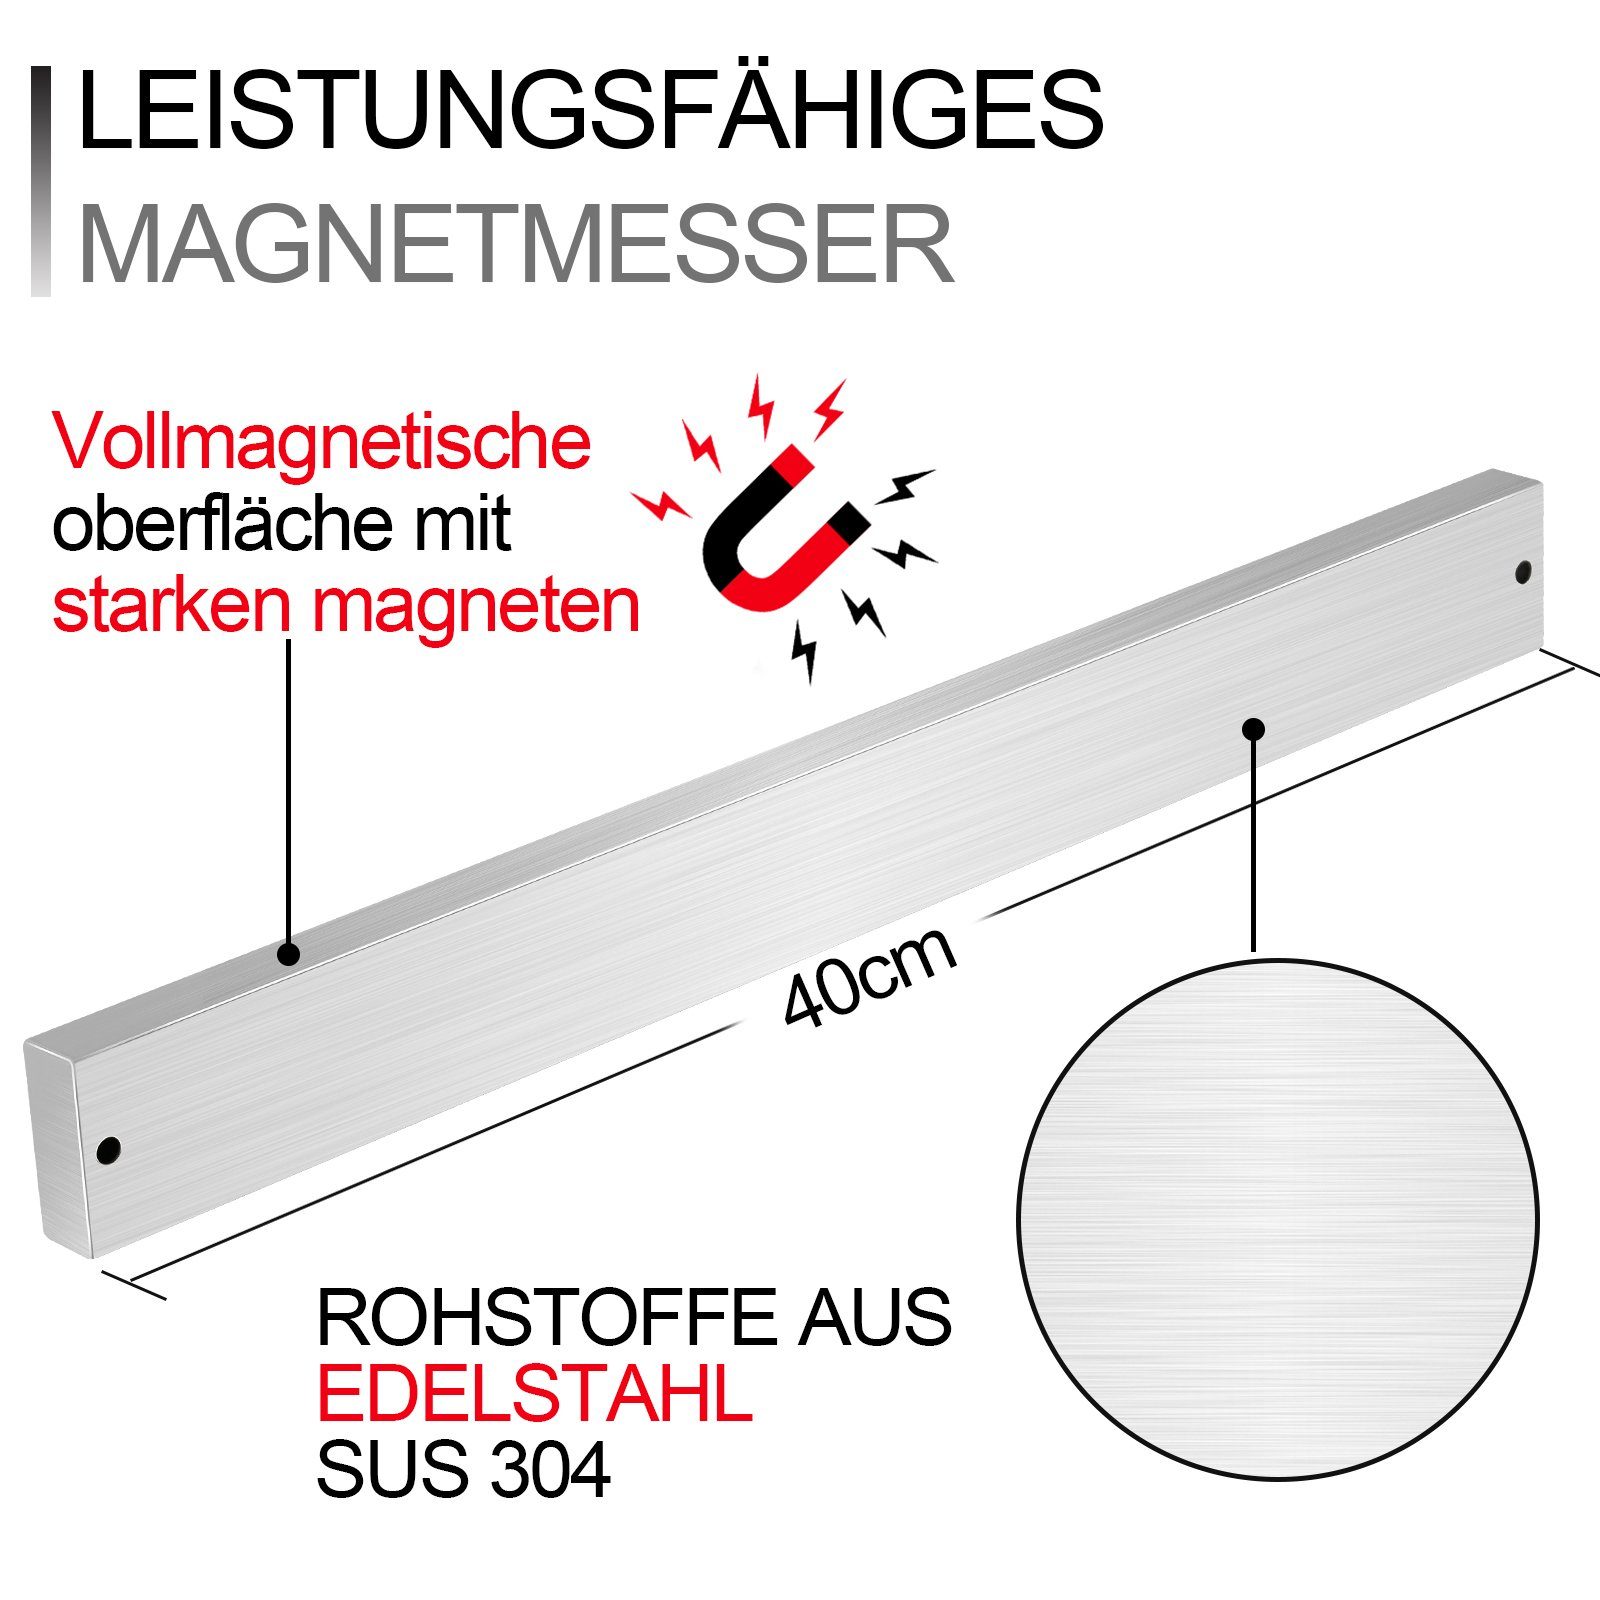 Messer-Leiste 3M Magnetleiste 40cm Wand-Magnet selbstklebend magnetisch Gimisgu Messer mit -